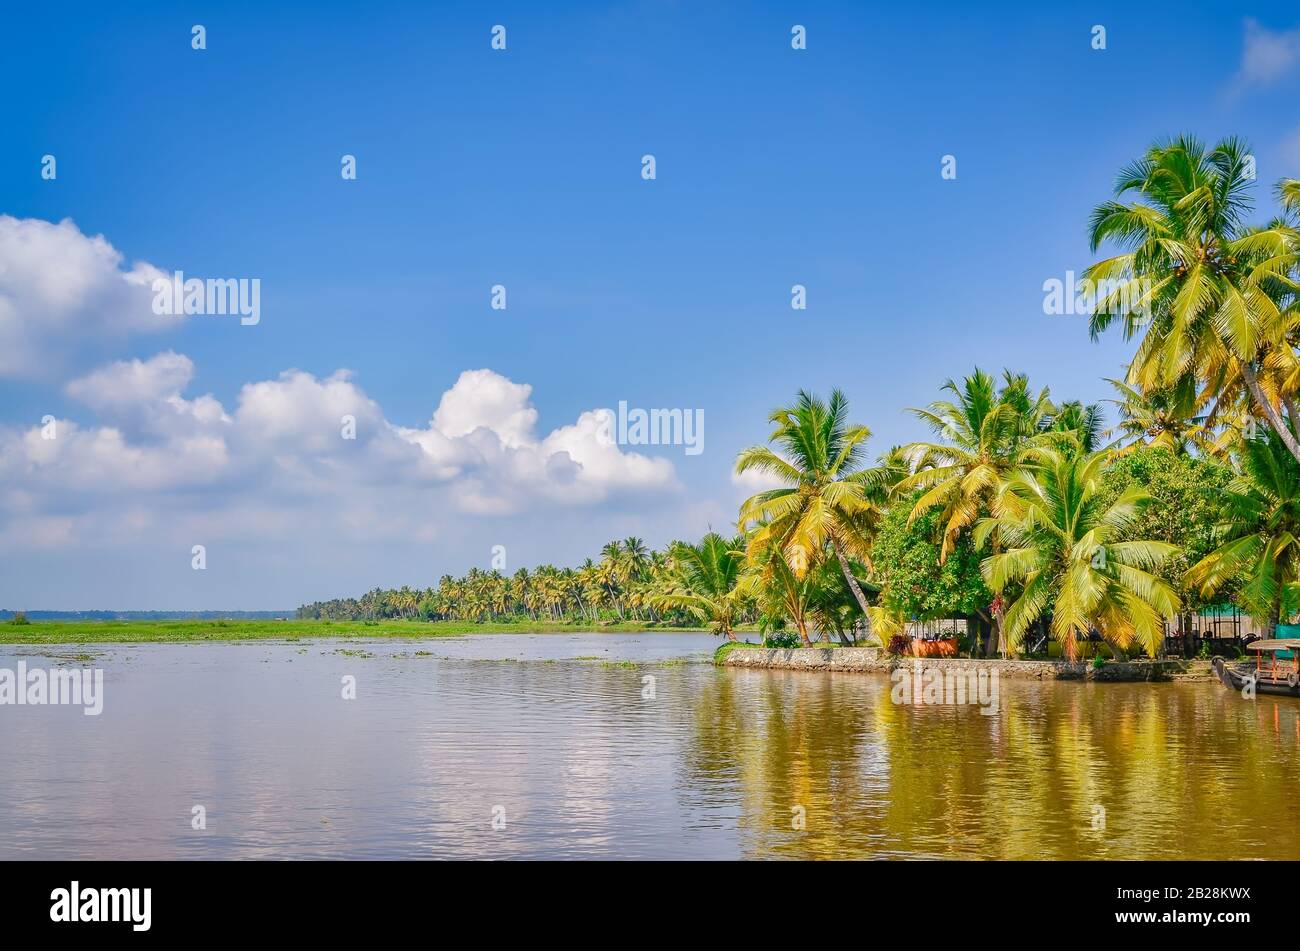 Landschaft mit Kokosnussbäumen, Backwaters und einem klaren blauen Himmel. Aus Kerala, Indien. Stockfoto